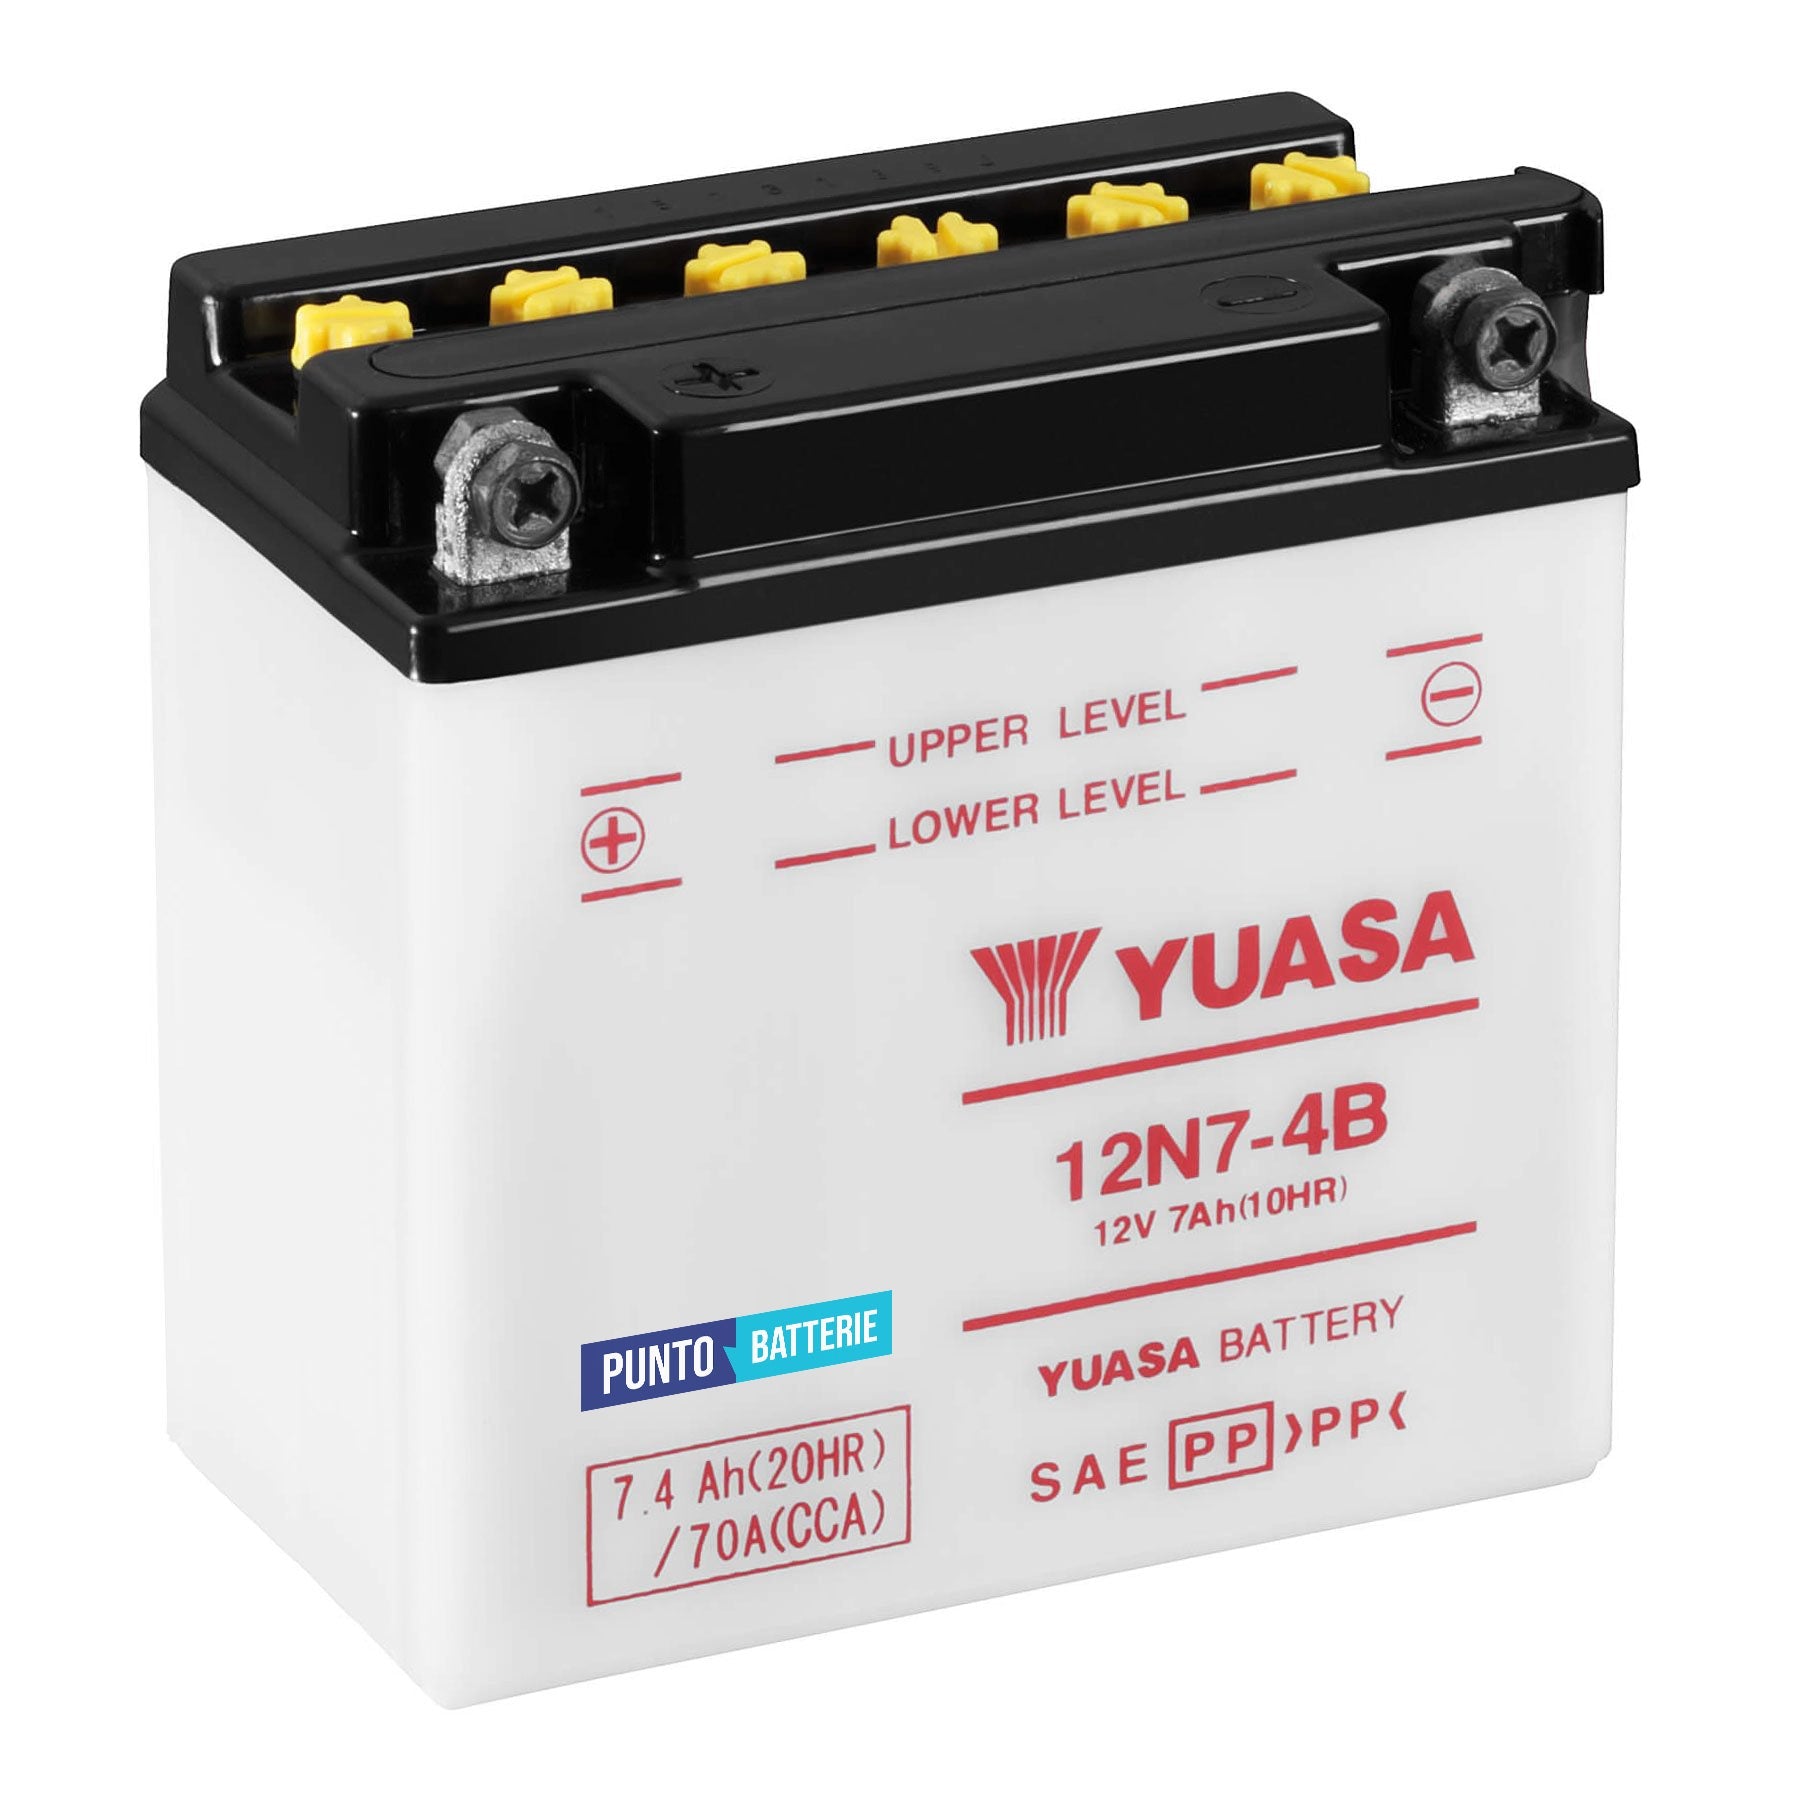 Batteria originale Yuasa Conventional 12N7-4B, dimensioni 135 x 75 x 133, polo positivo a sinistra, 12 volt, 7 amperora, 70 ampere. Batteria per moto, scooter e powersport.